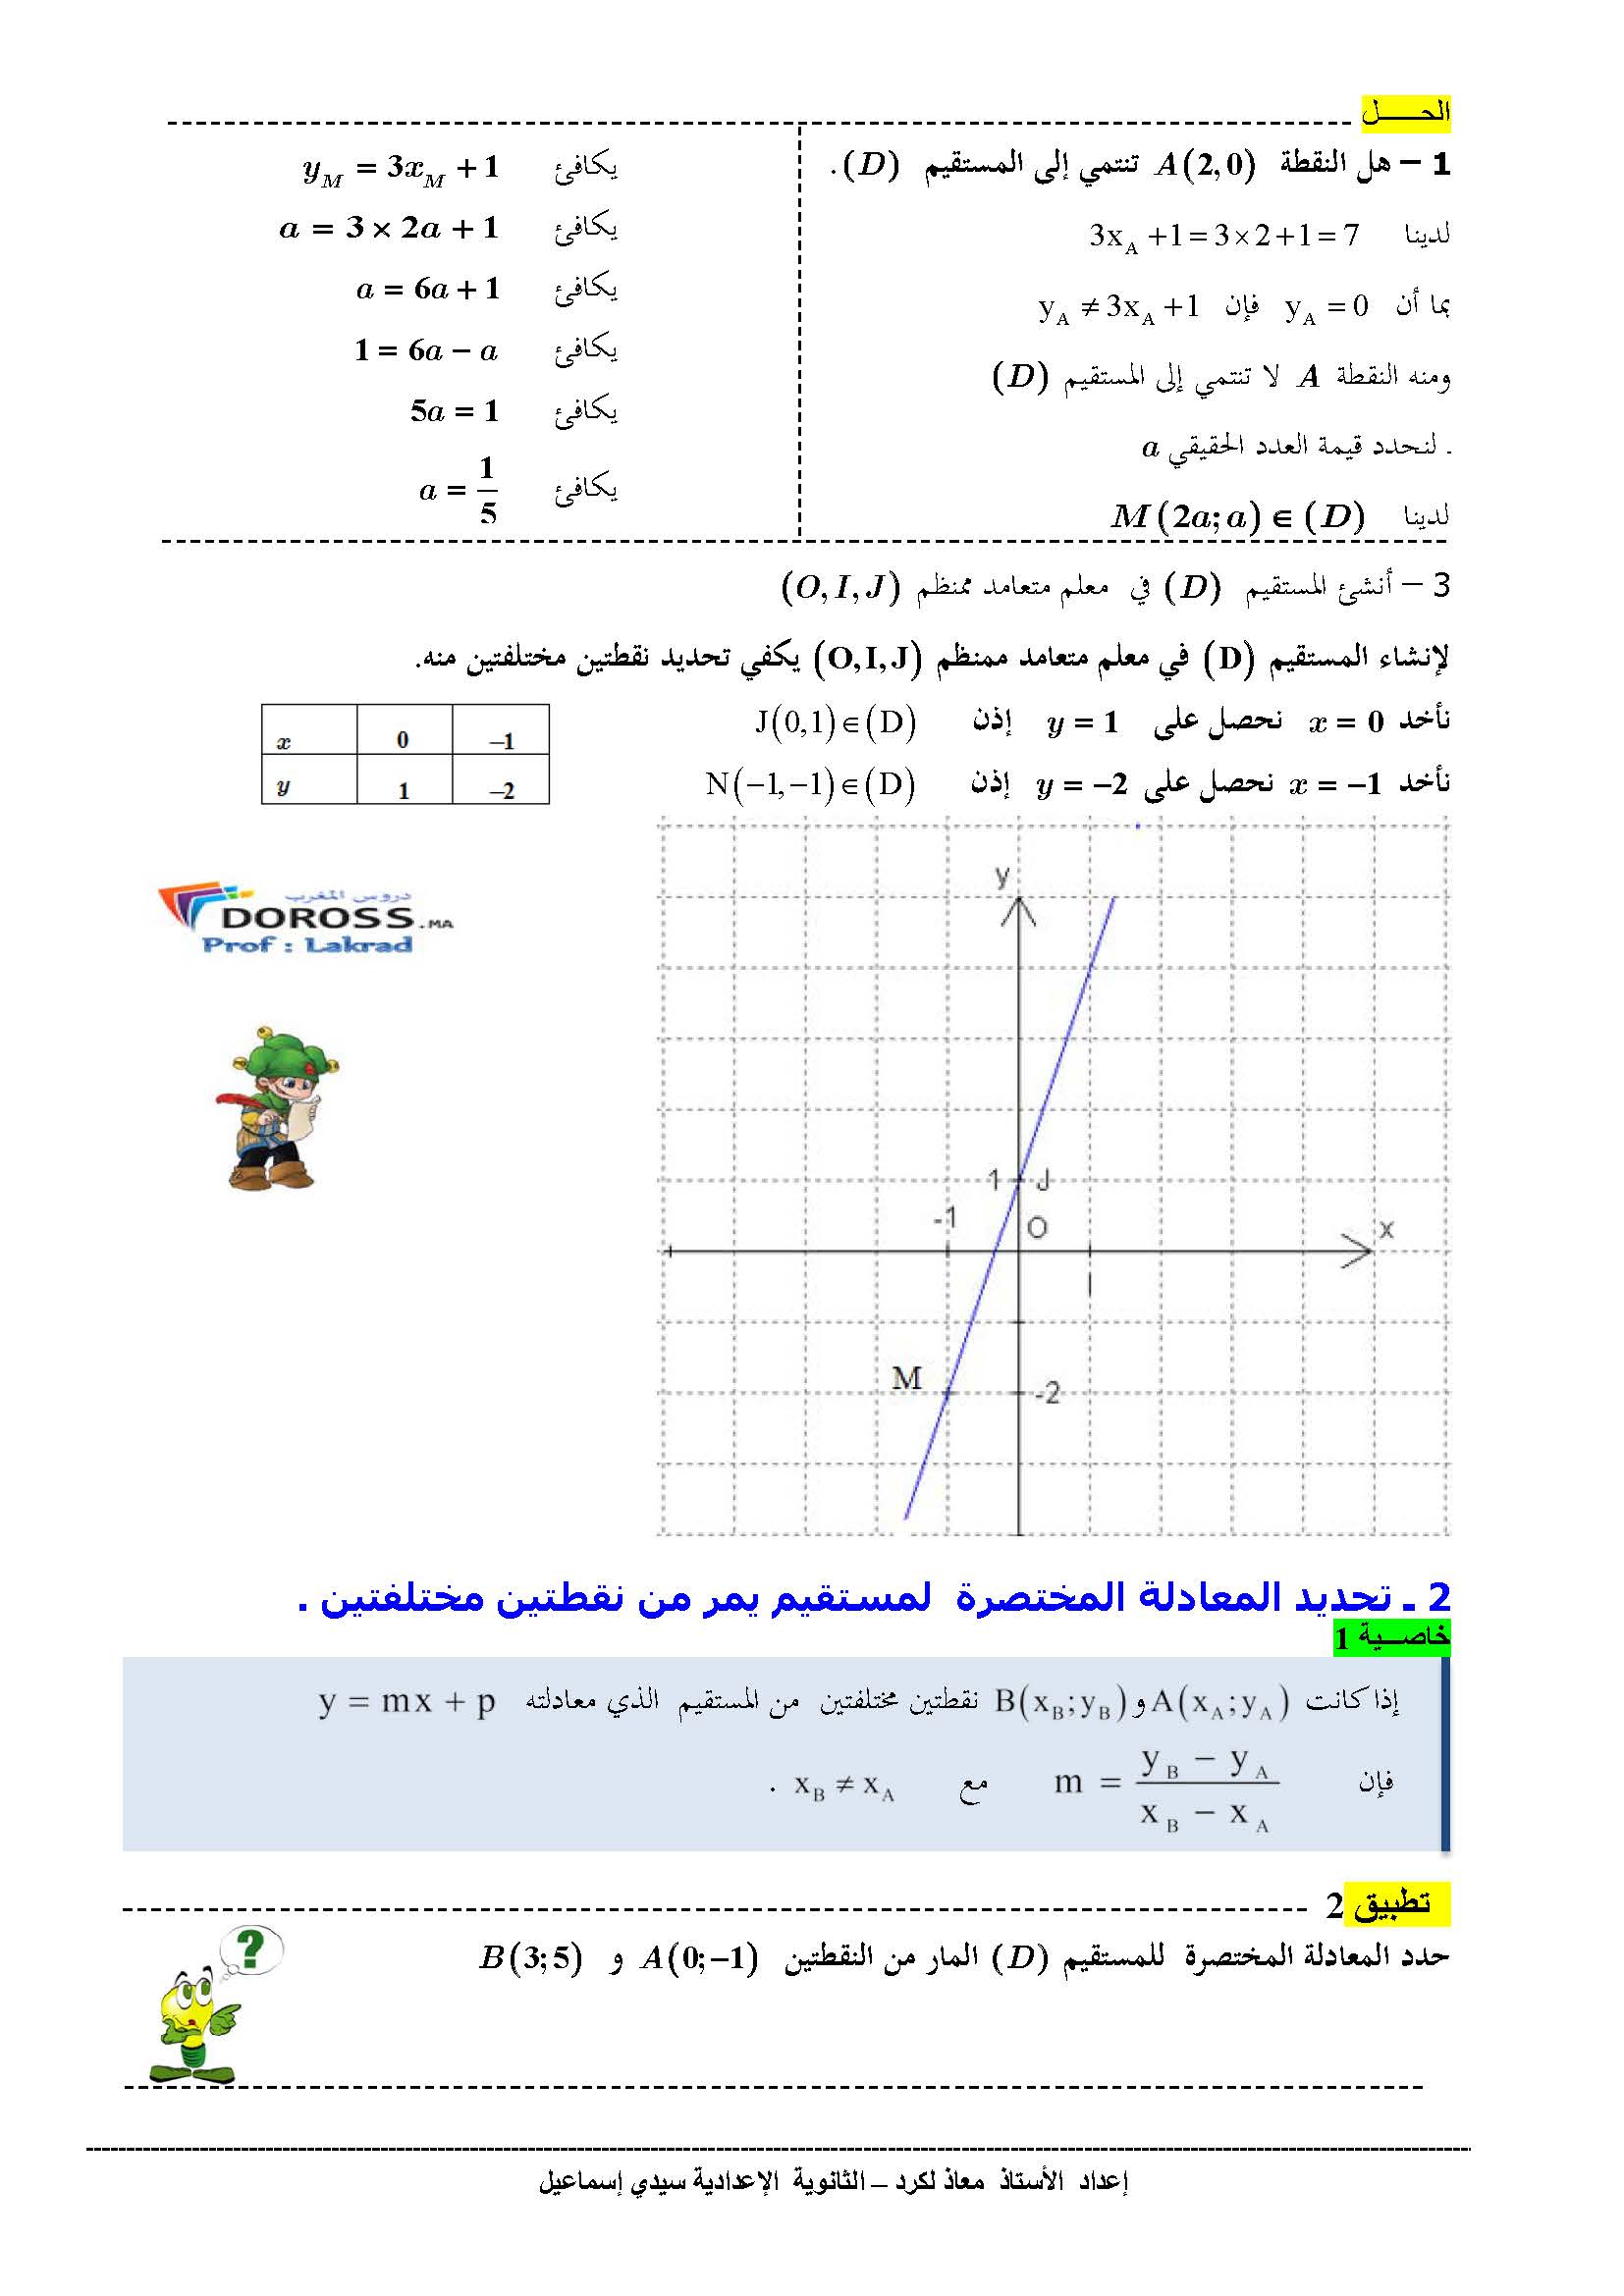 دروس الرياضيات : درس + تطبيقات معادلة مستقيم | الثالثة إعدادي 